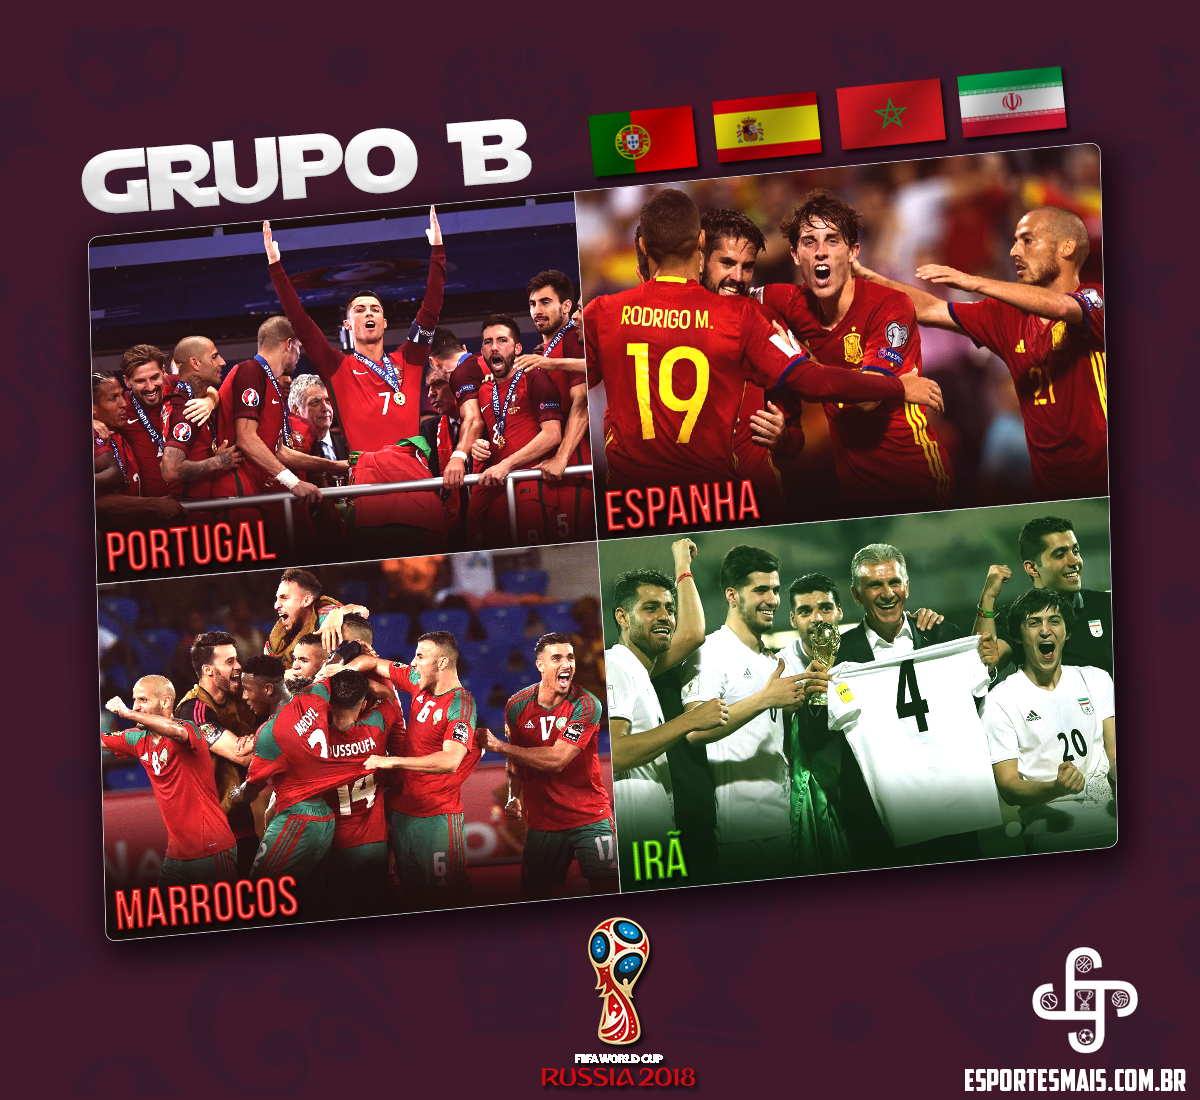  Opinião: Espanha classificada facilmente? Veja o que esperar do Grupo B da Copa